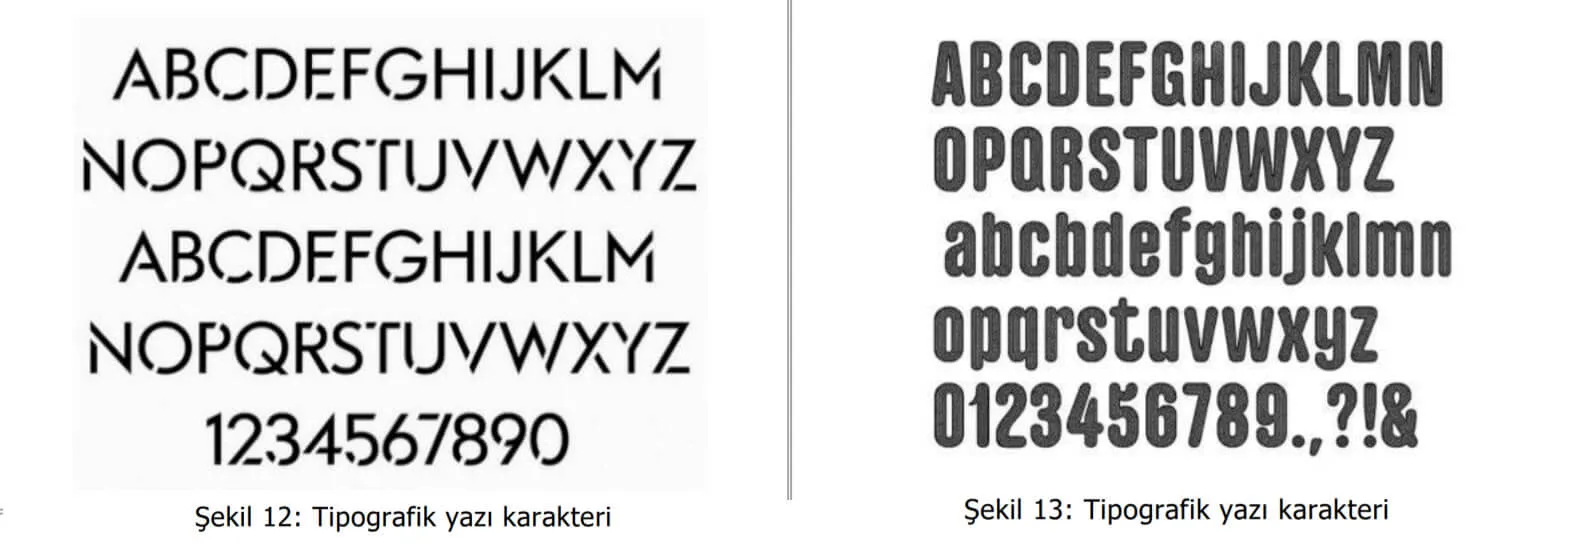 tipografik yazı karakter örnekleri-gaziosmanpaşa web tasarım